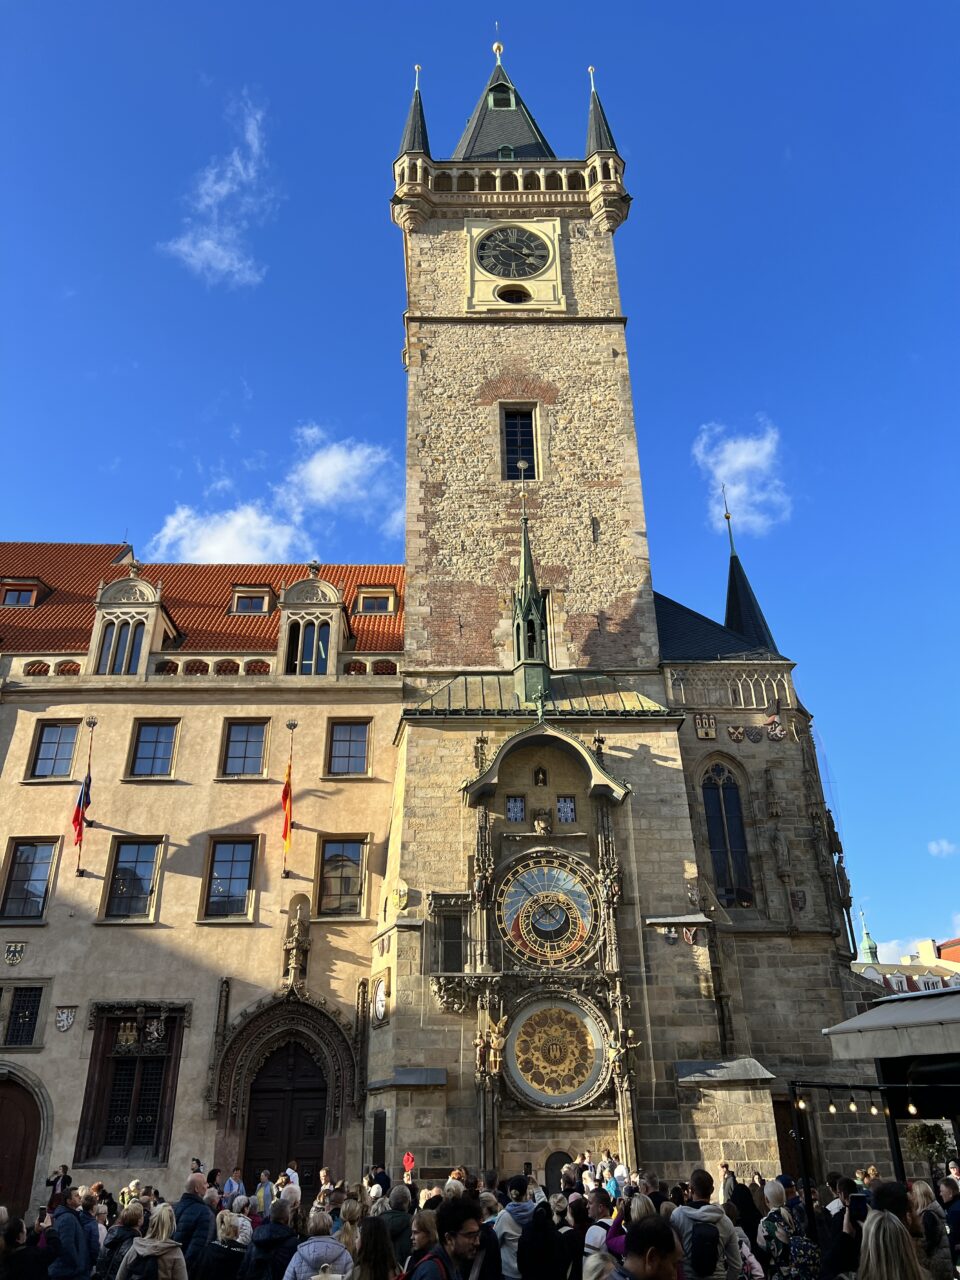 Stort tårn med en astronomisk klokke på midten. Foto